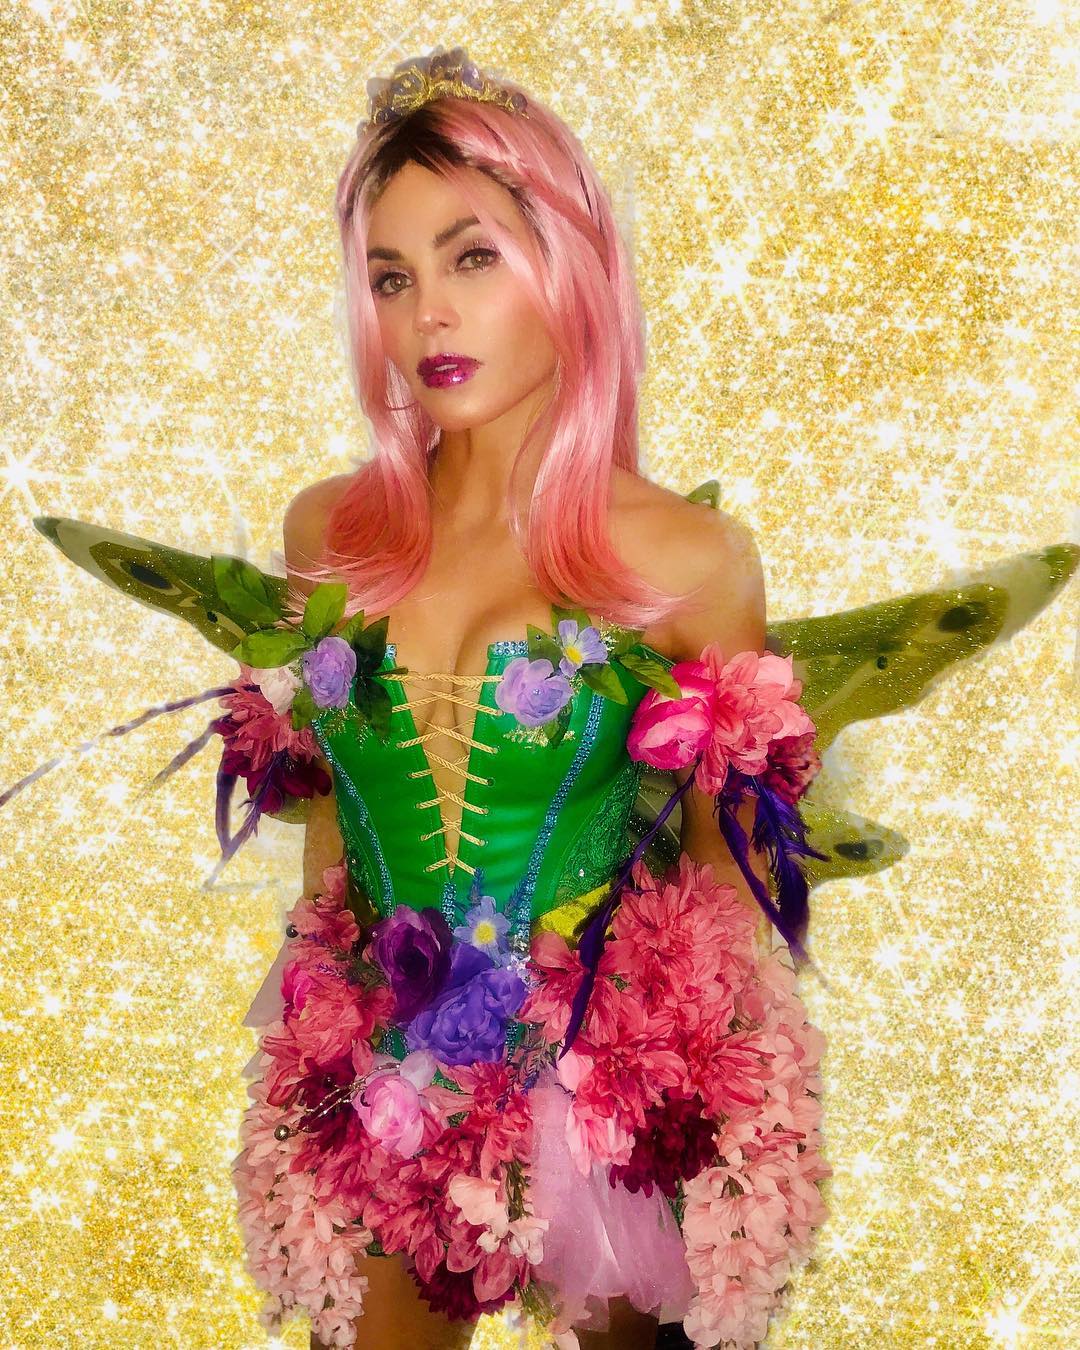 Jenna Dewan as a Halloween Fairy